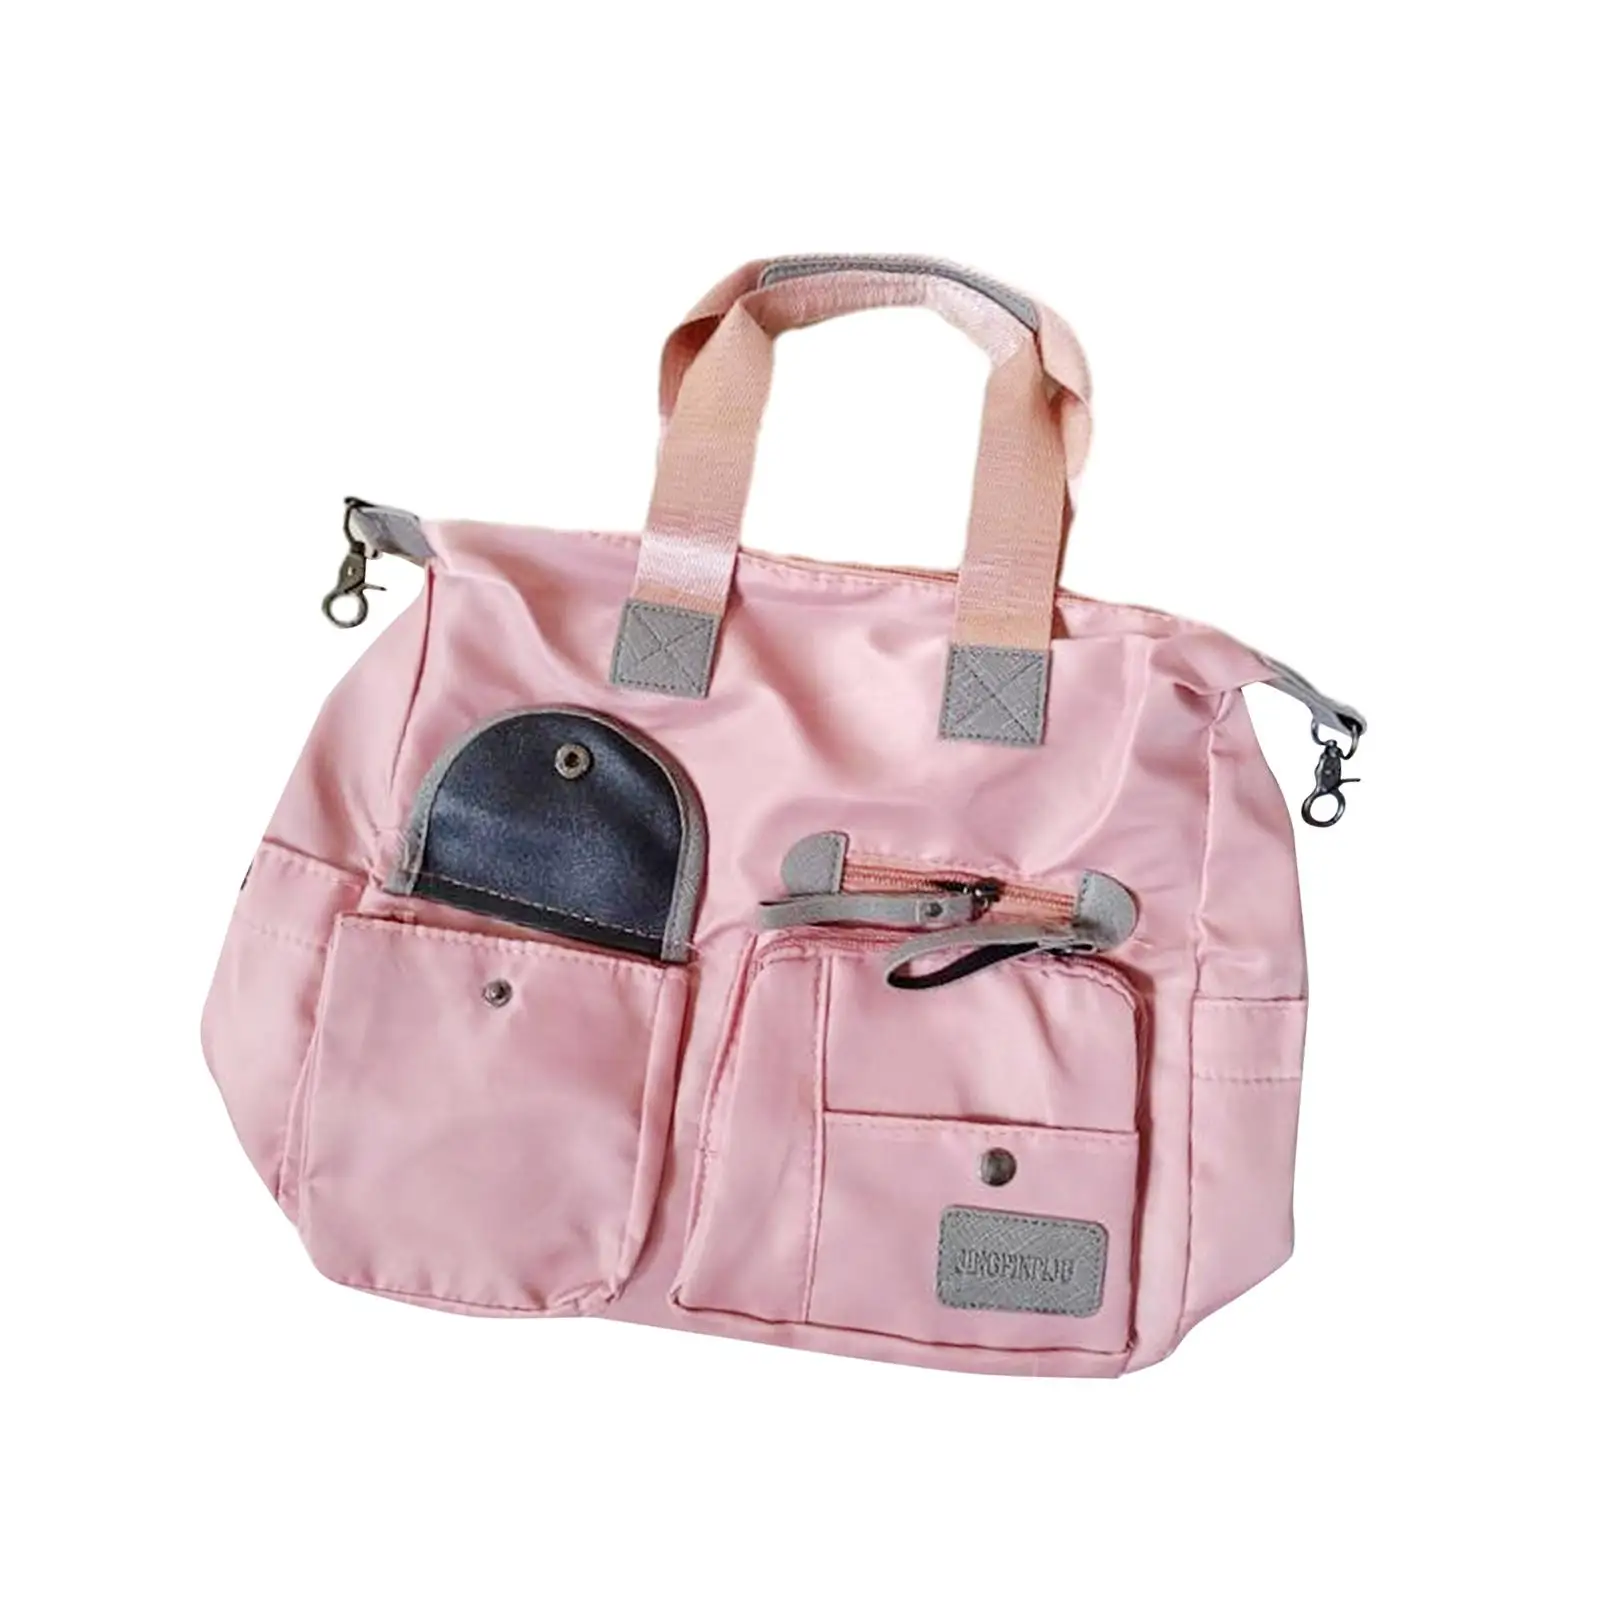 Diaper Bag Tote Bags for Women Mommy Maternity Nursing Bag Travel Messenger Satchel Crossbody Bag Mommy Baby Bag Handbag